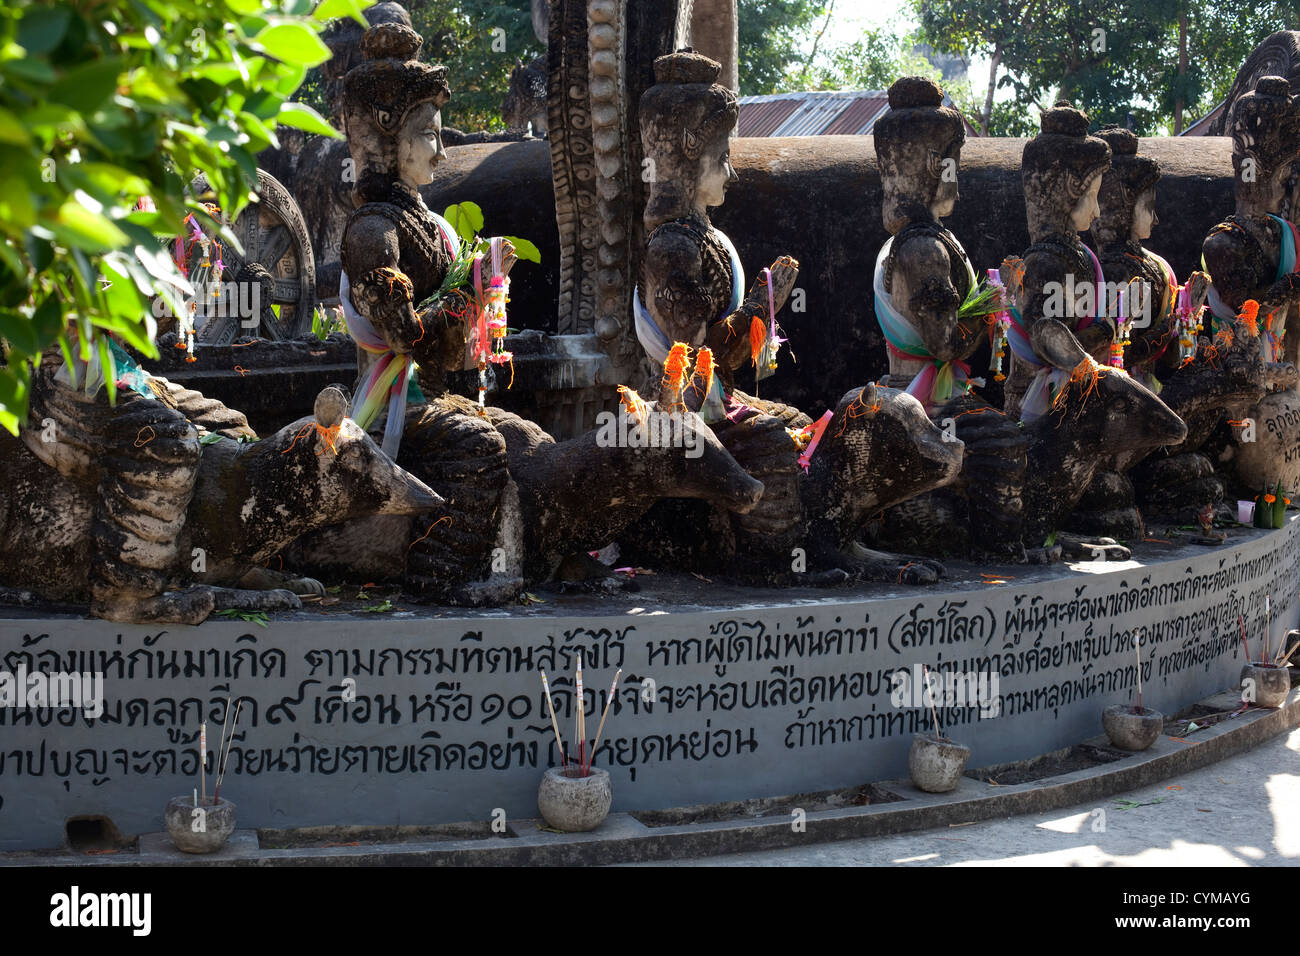 Thailand Sculpture in the Sala Kaew Ku sculpture park Stock Photo